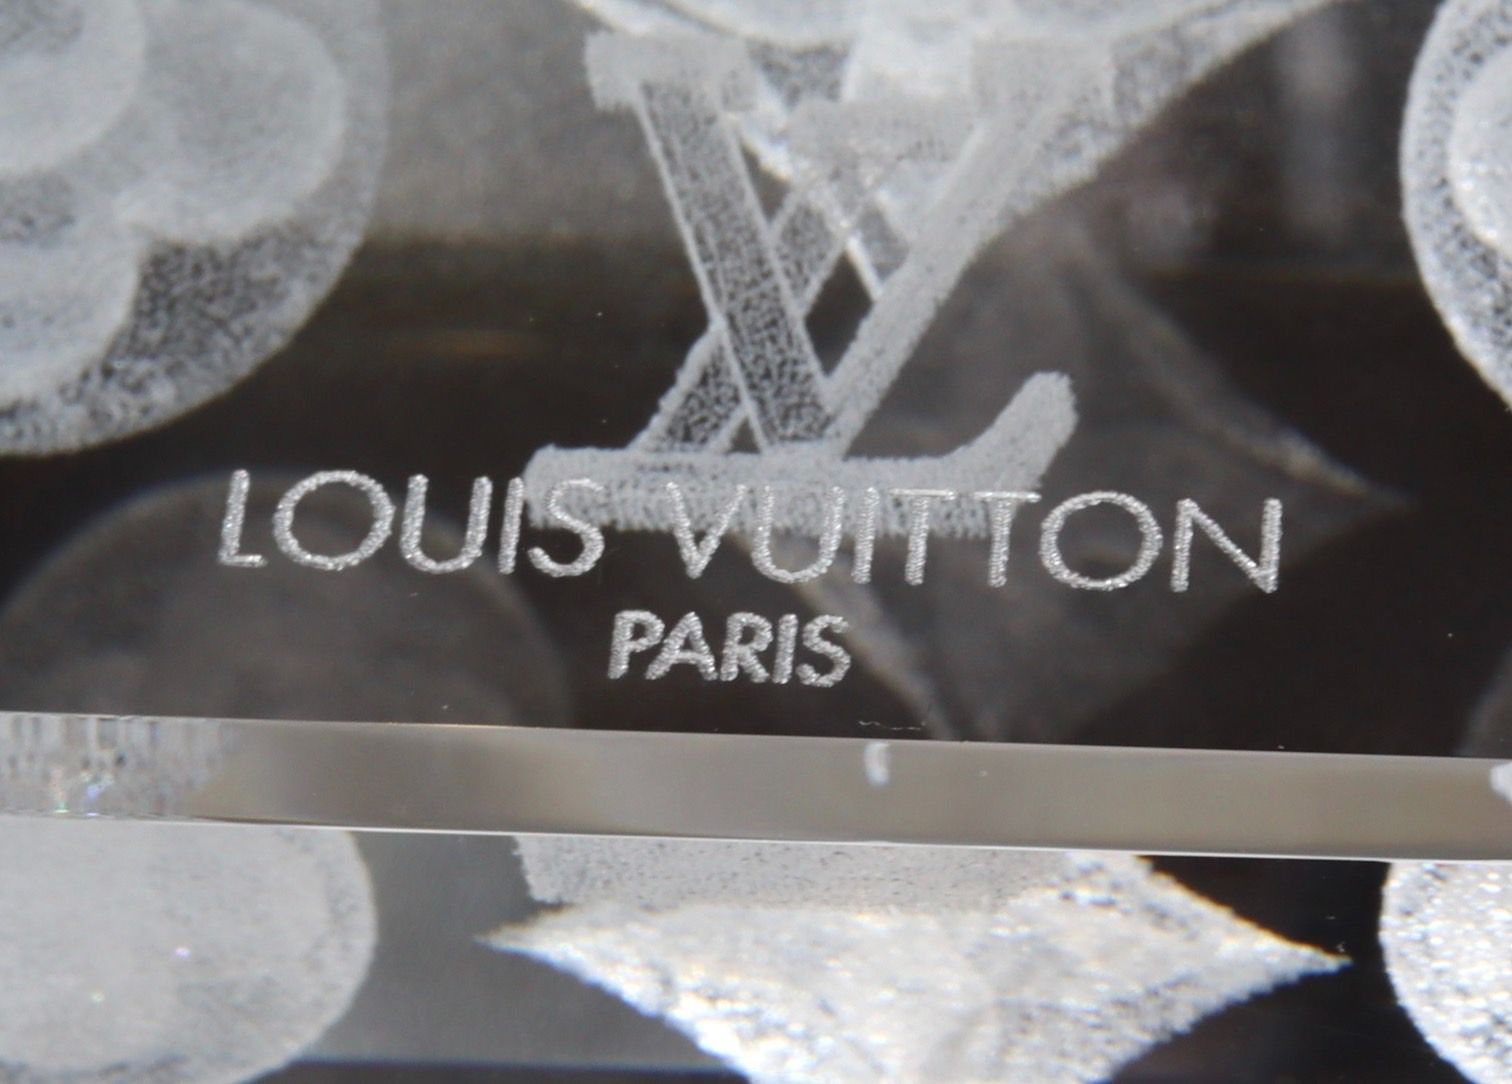 Louis Vuitton ルイヴィトン ペーパーウェイト モノグラム ロゴ 3D